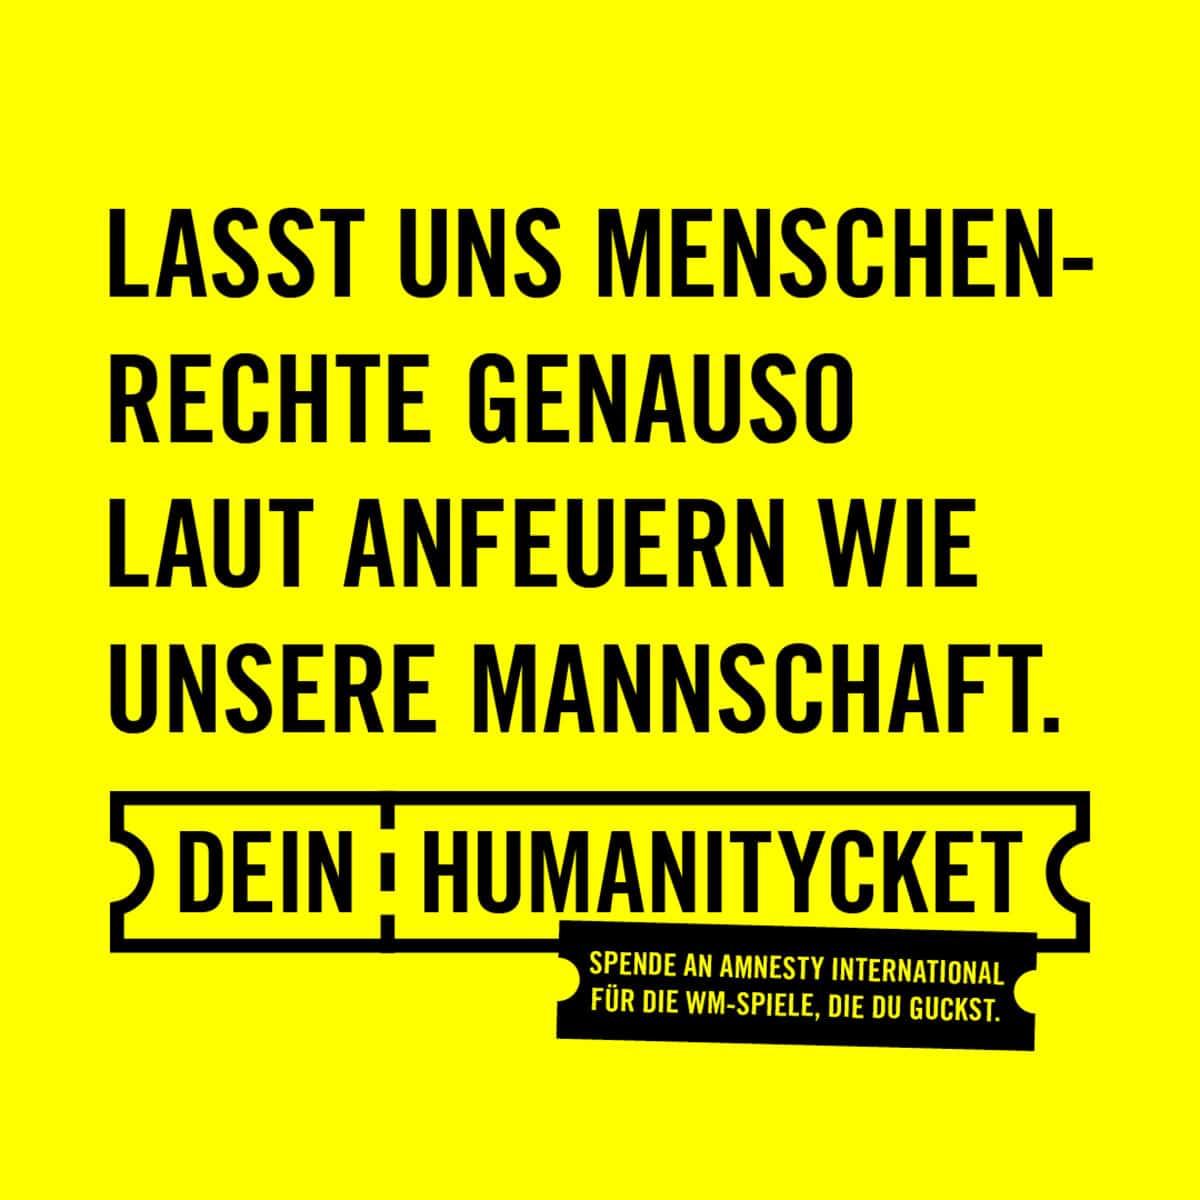 Im leuchtenden gelb der Amnesty International Organisation mit schwarzer Typo steht: Lass uns Menschenrechte genauso laut anfeuern wie unsere Mannschaft